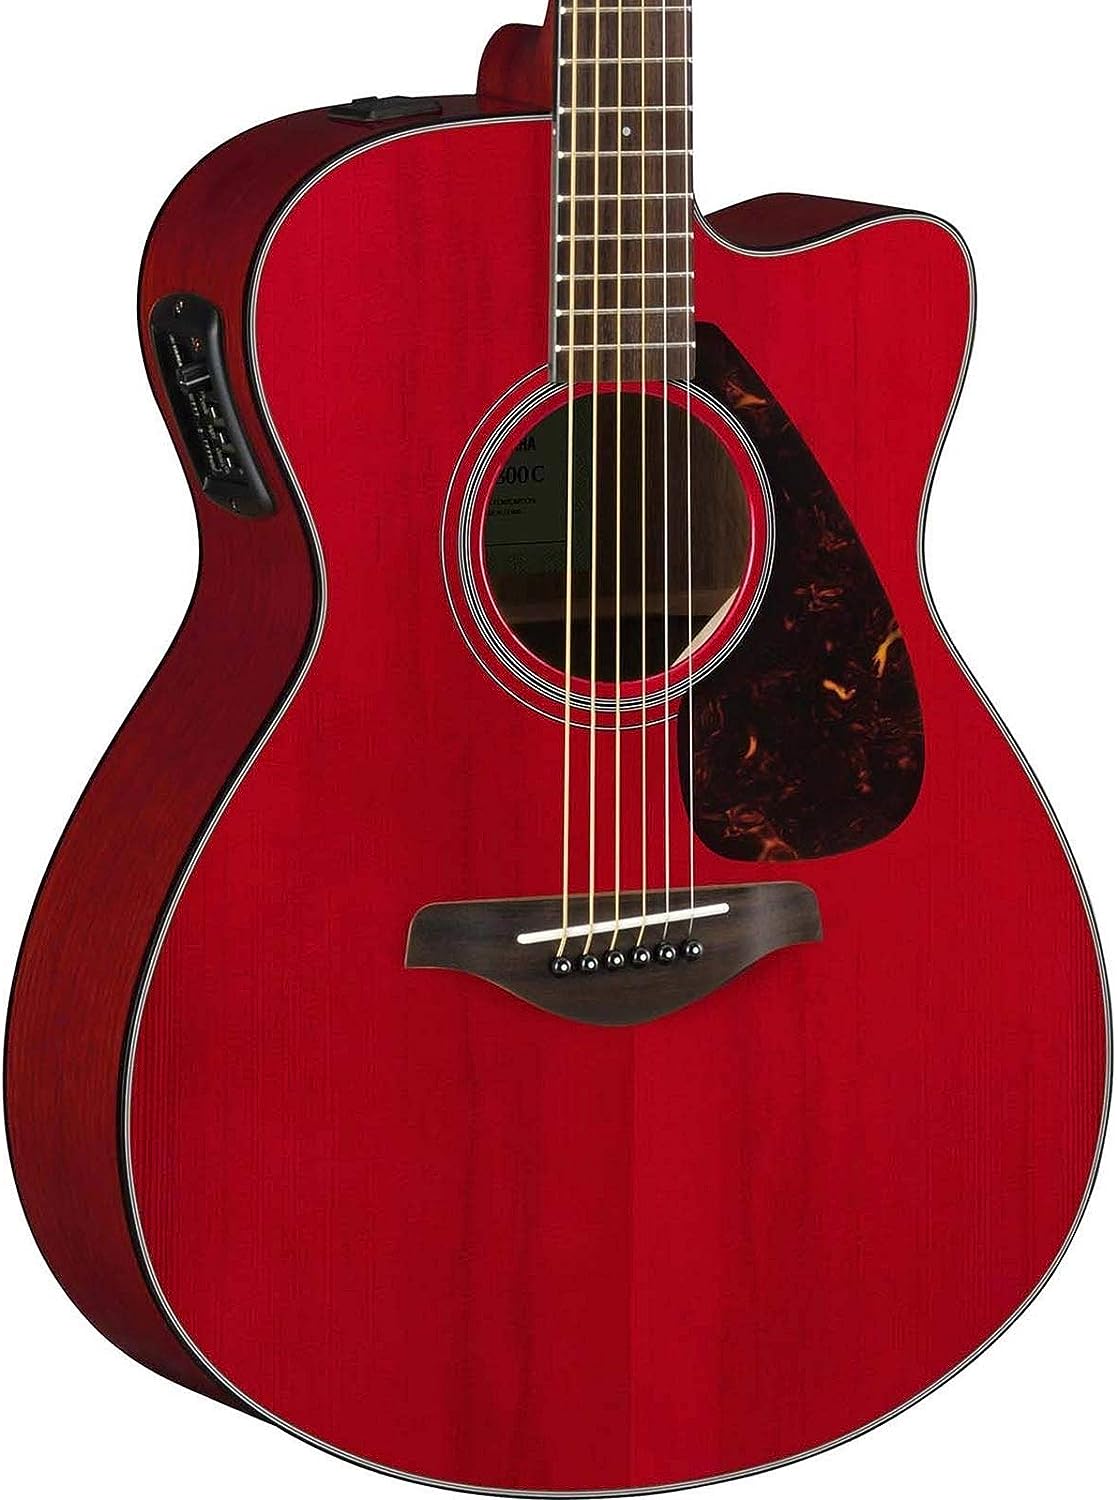 Какую гитару ямаха. Гитара электроакустическая Yamaha fsx800c Ruby Red. Гитара Yamaha fs800. Yamaha+fs800 Nat. Гитара Ямаха 800 электроакустич.